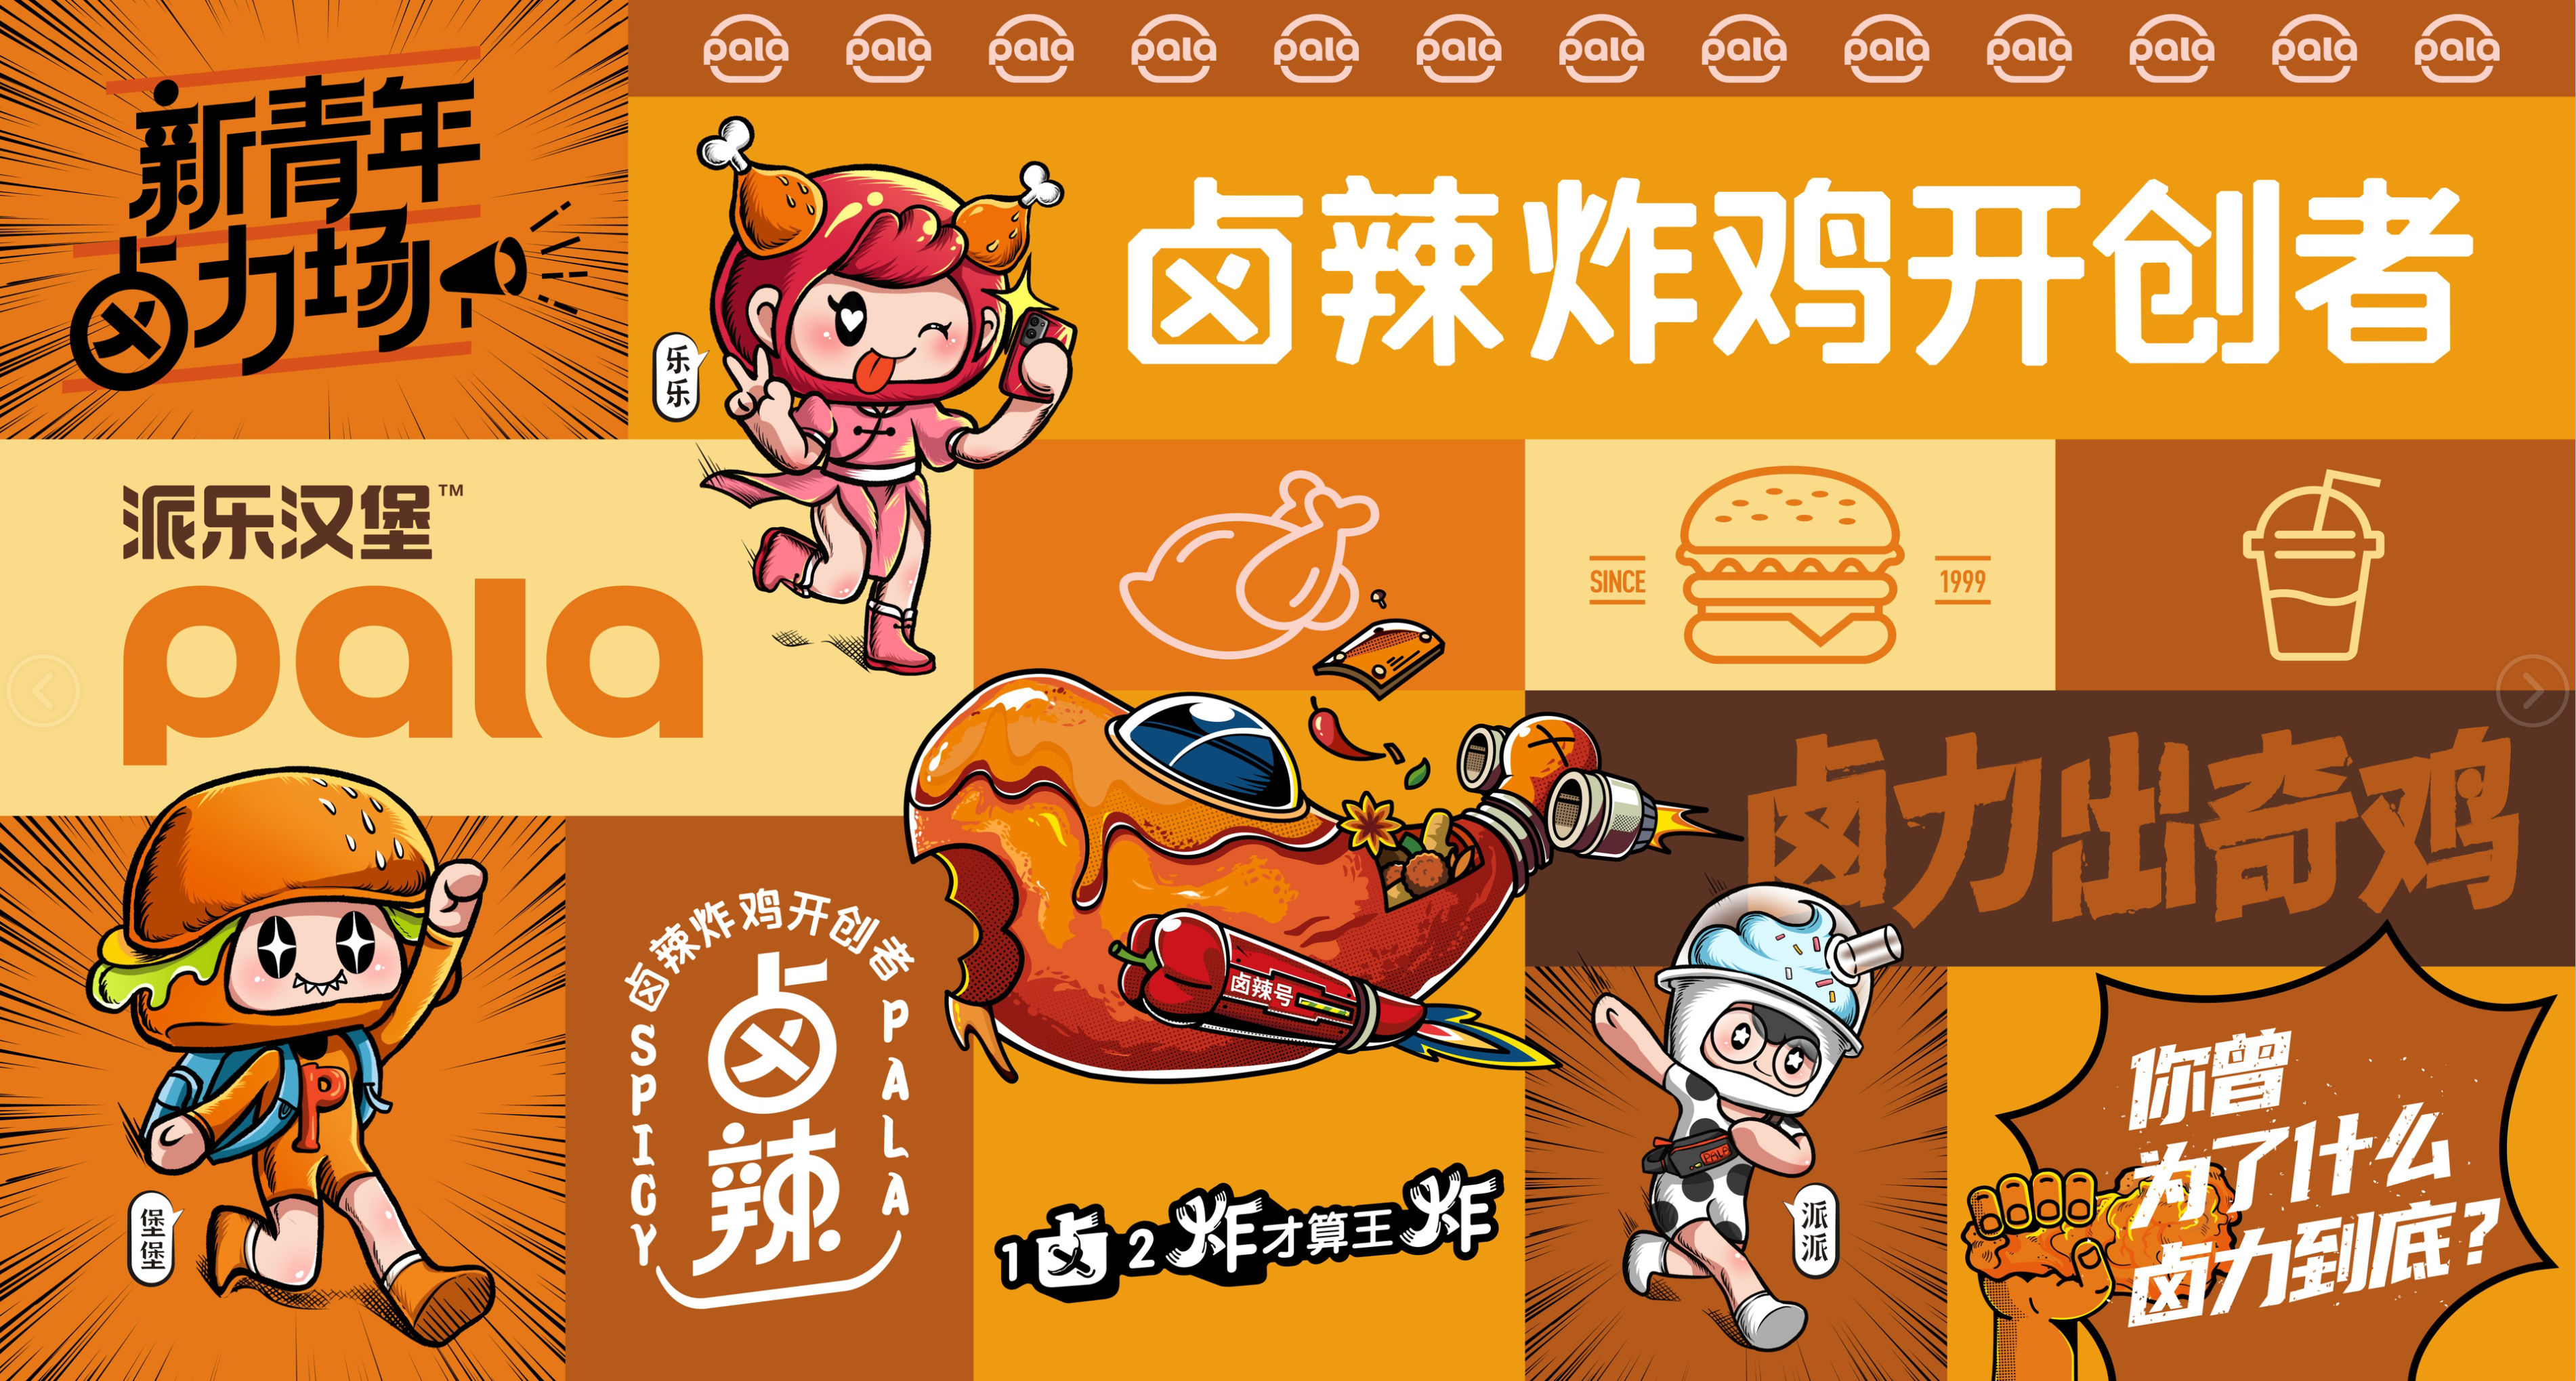 牢记使命不忘初心，派乐汉堡22周年立志成为中国炸鸡汉堡第一品牌